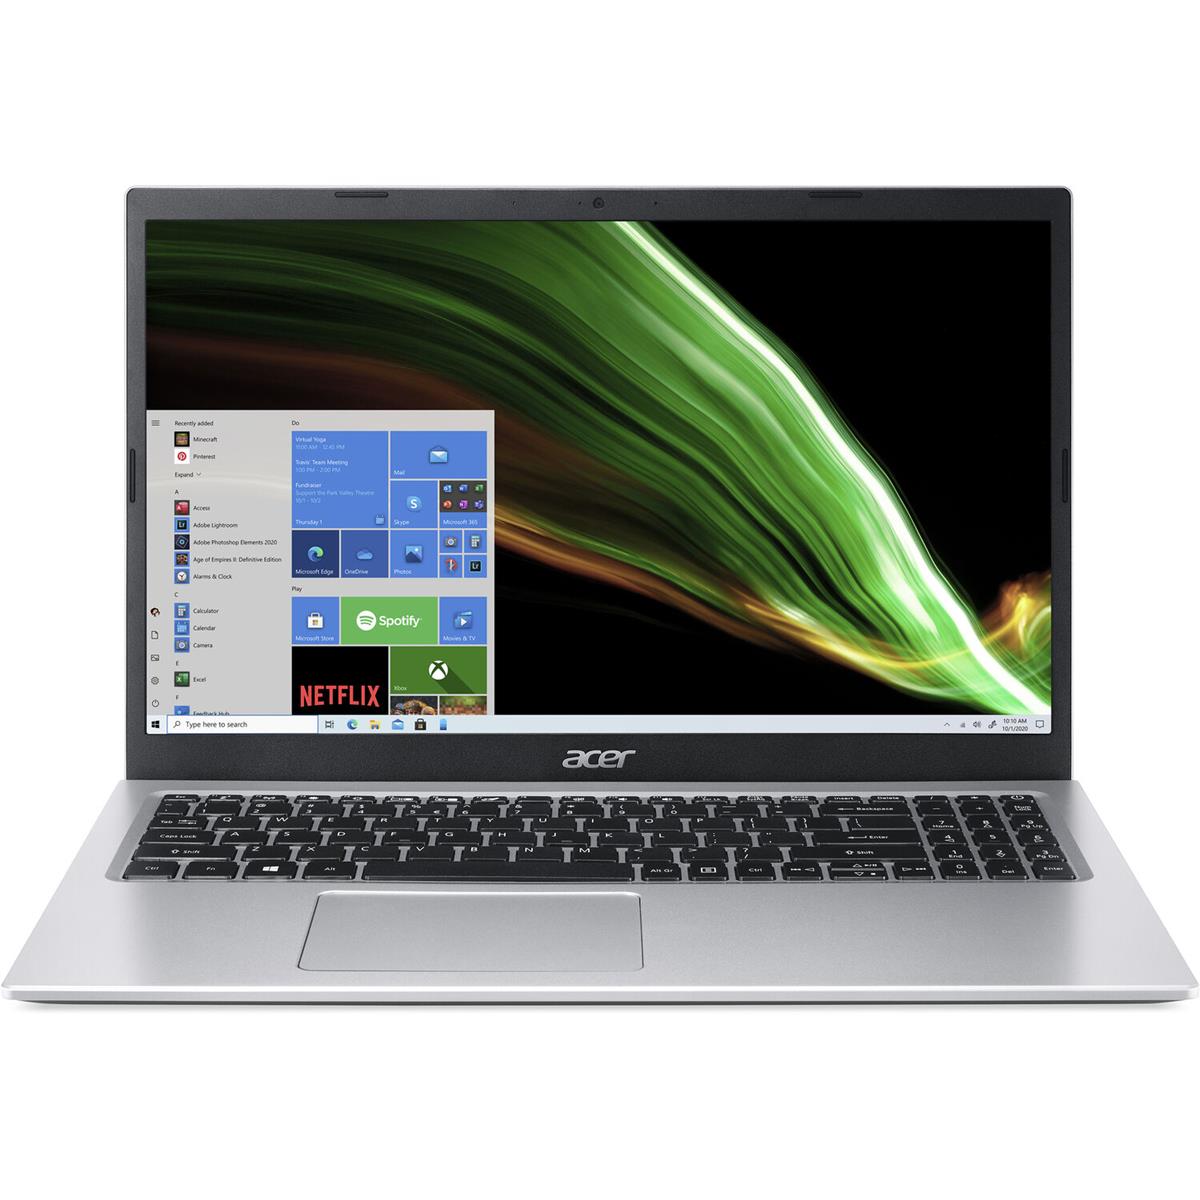 Acer Aspire 3: 15.6" FHD IPS, i3-1115G4, 8GB DDR4, 256GB SSD $329.99